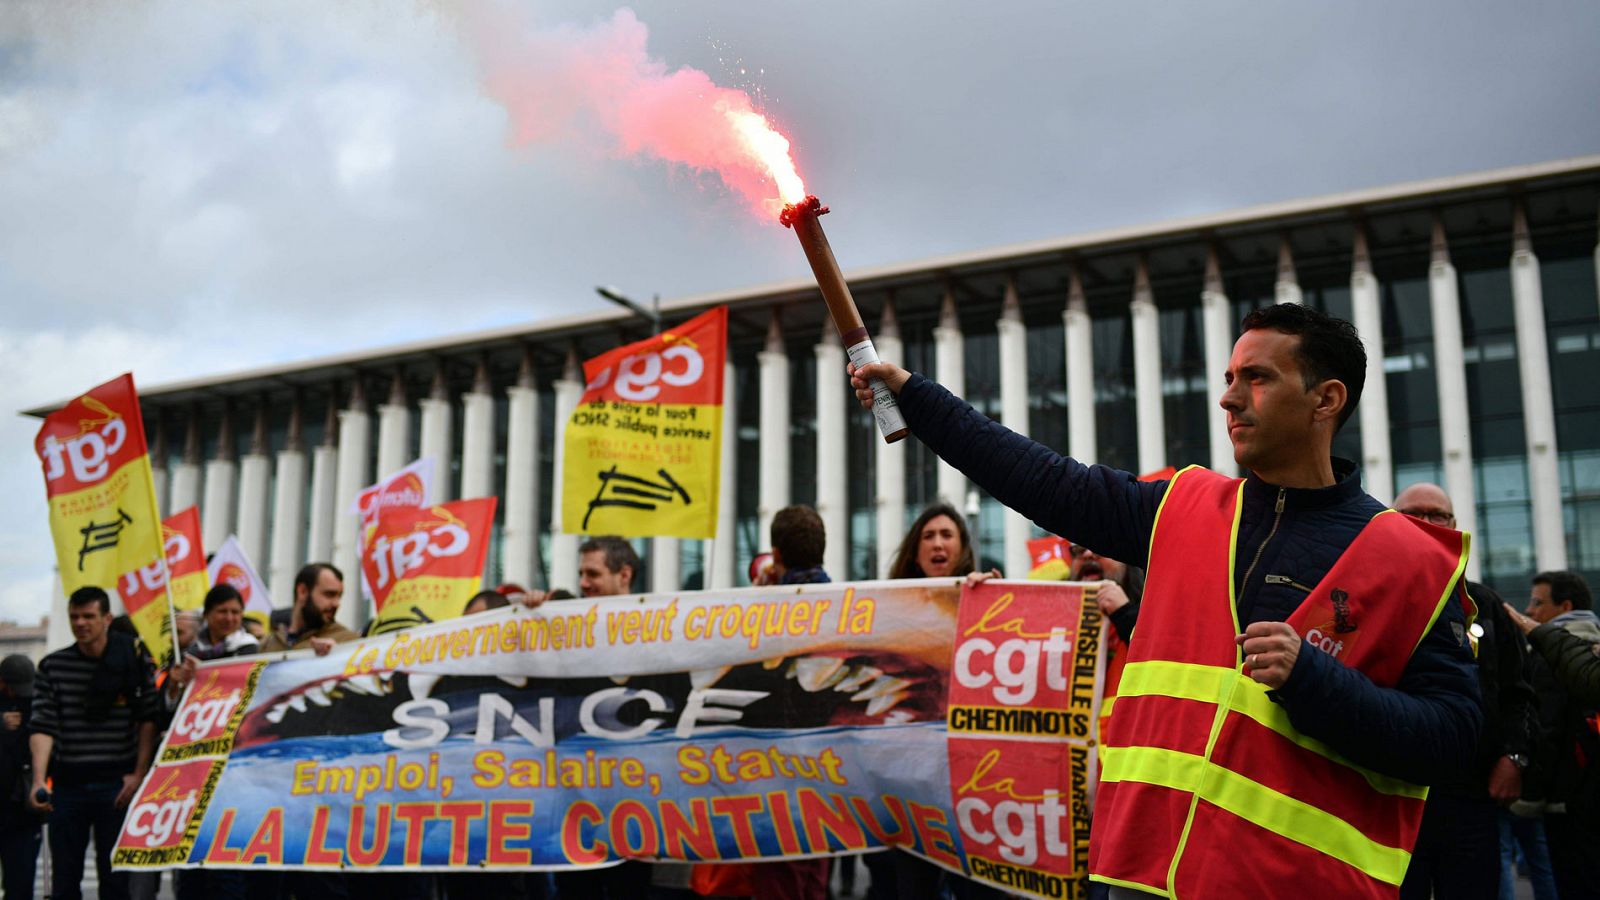 El segundo día de huelga en Francia provoca atascos de 400 km en los accesos a la capital